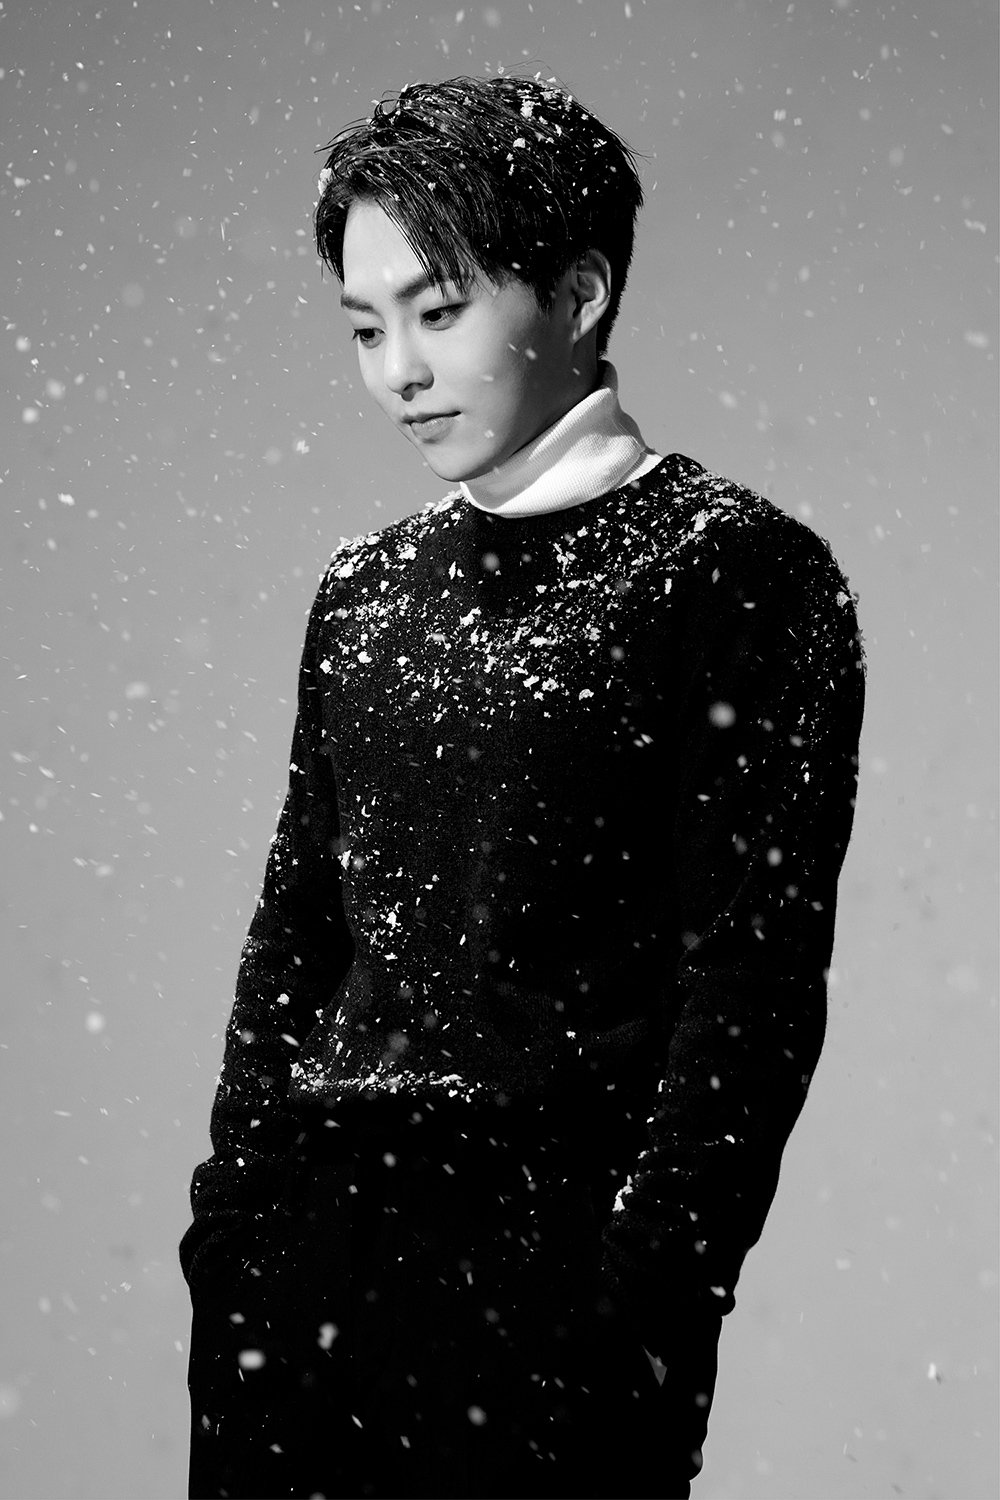 10일(목), EXO 윈터 스페셜 앨범 (더블타이틀곡:Sing for you, 불공평해) 발매 예정 | 인스티즈